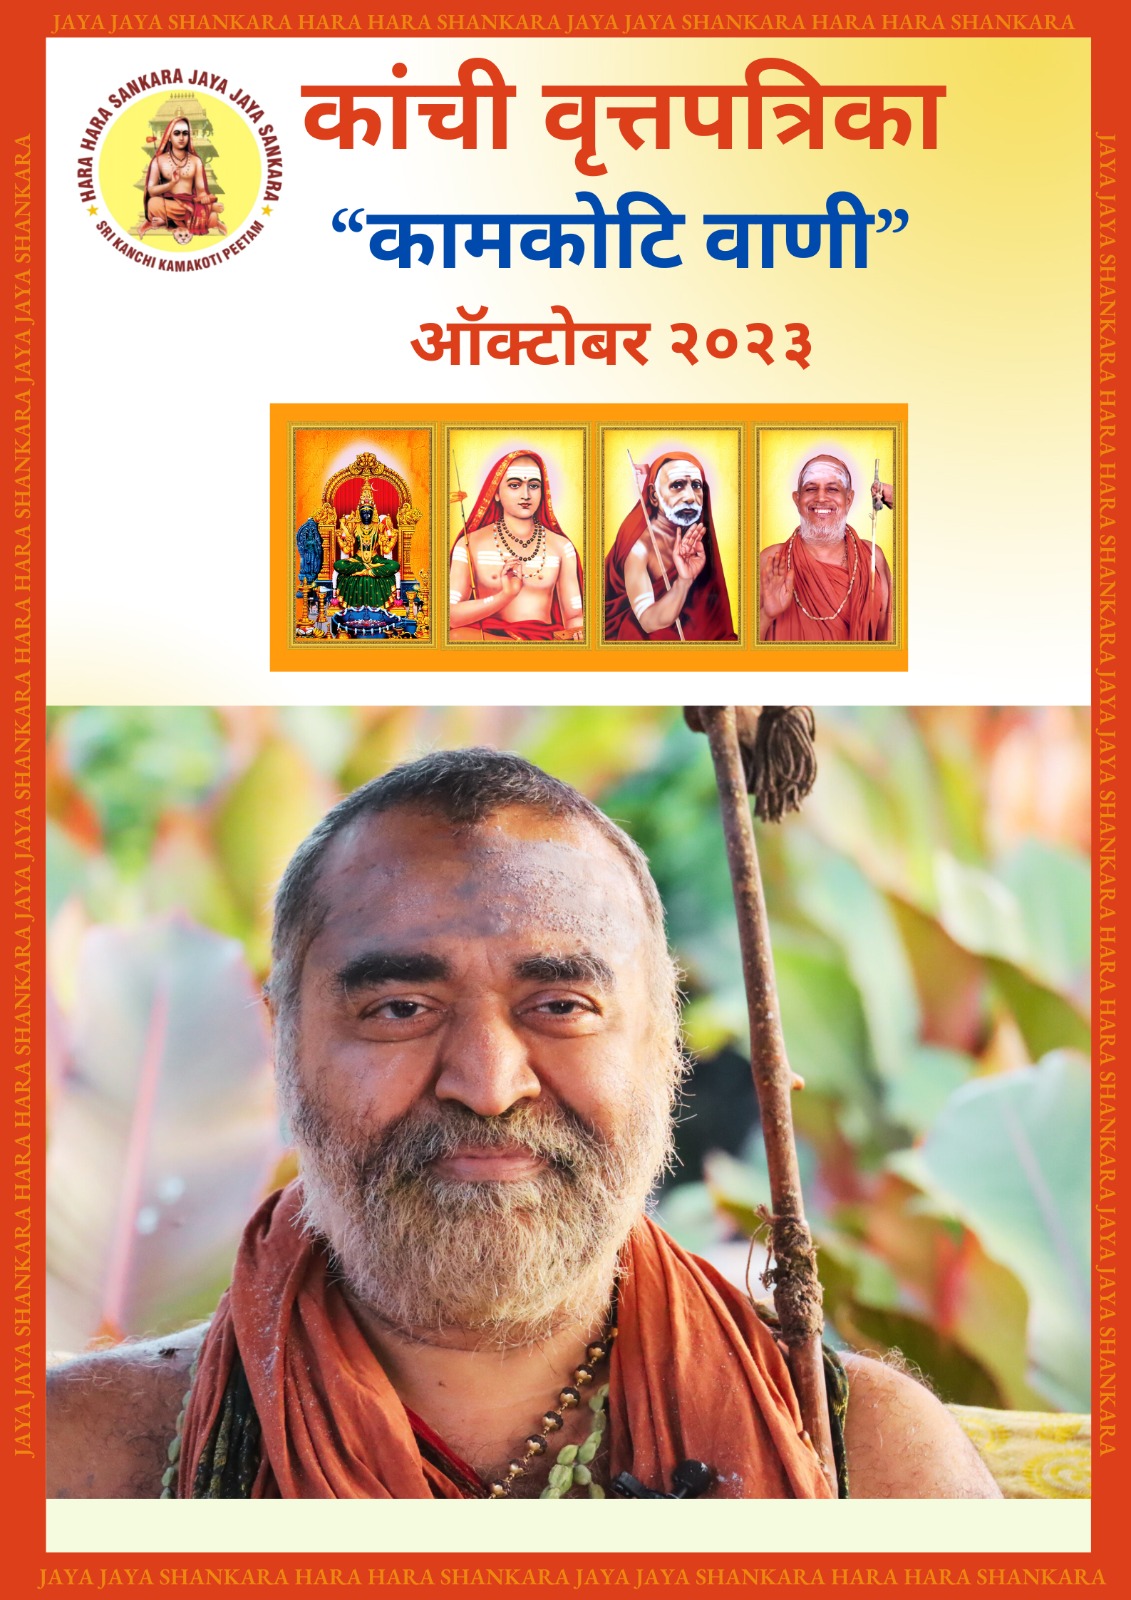 Kamakoti Vani - Monthly newsletter in Marathi